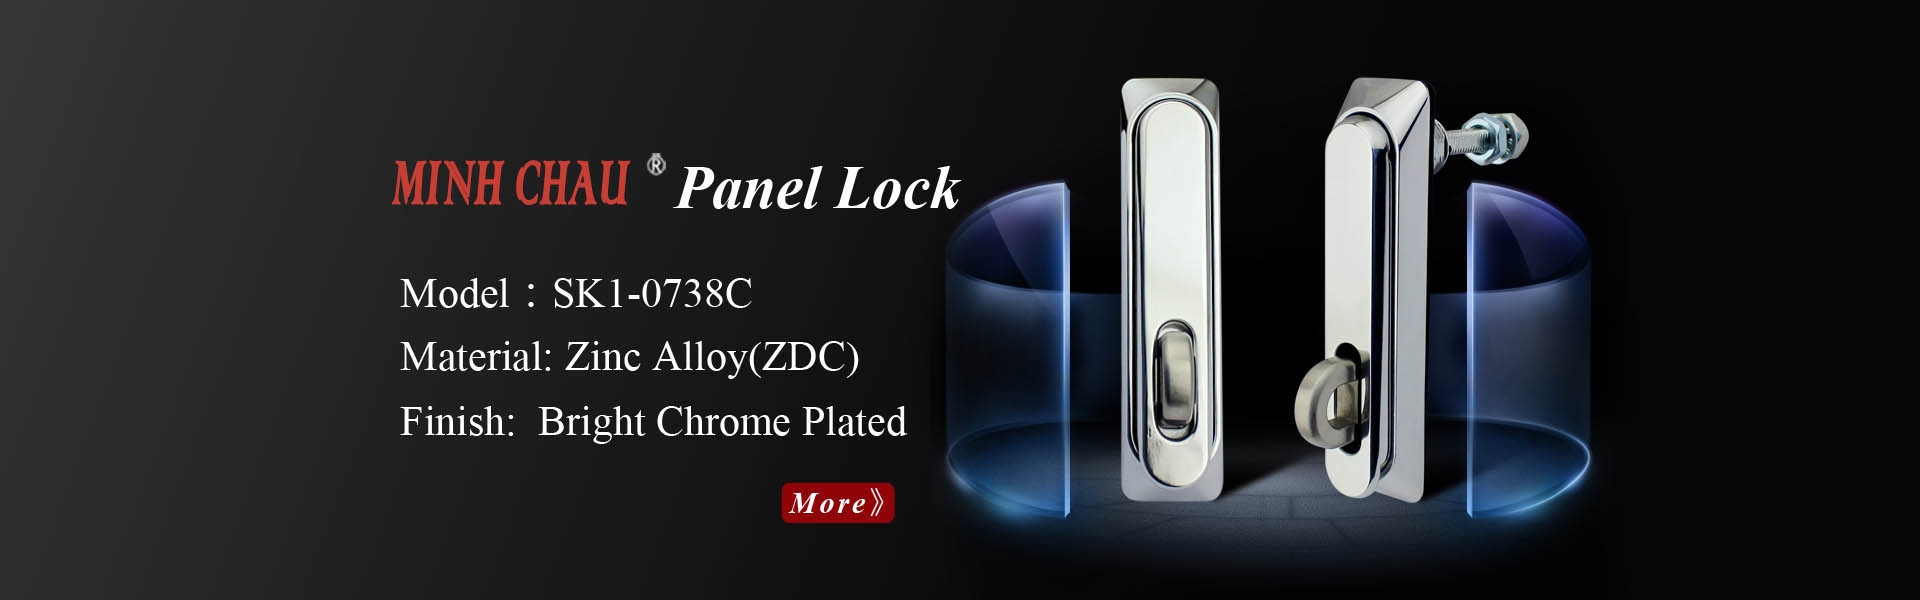 KUNLONG Panel Lock